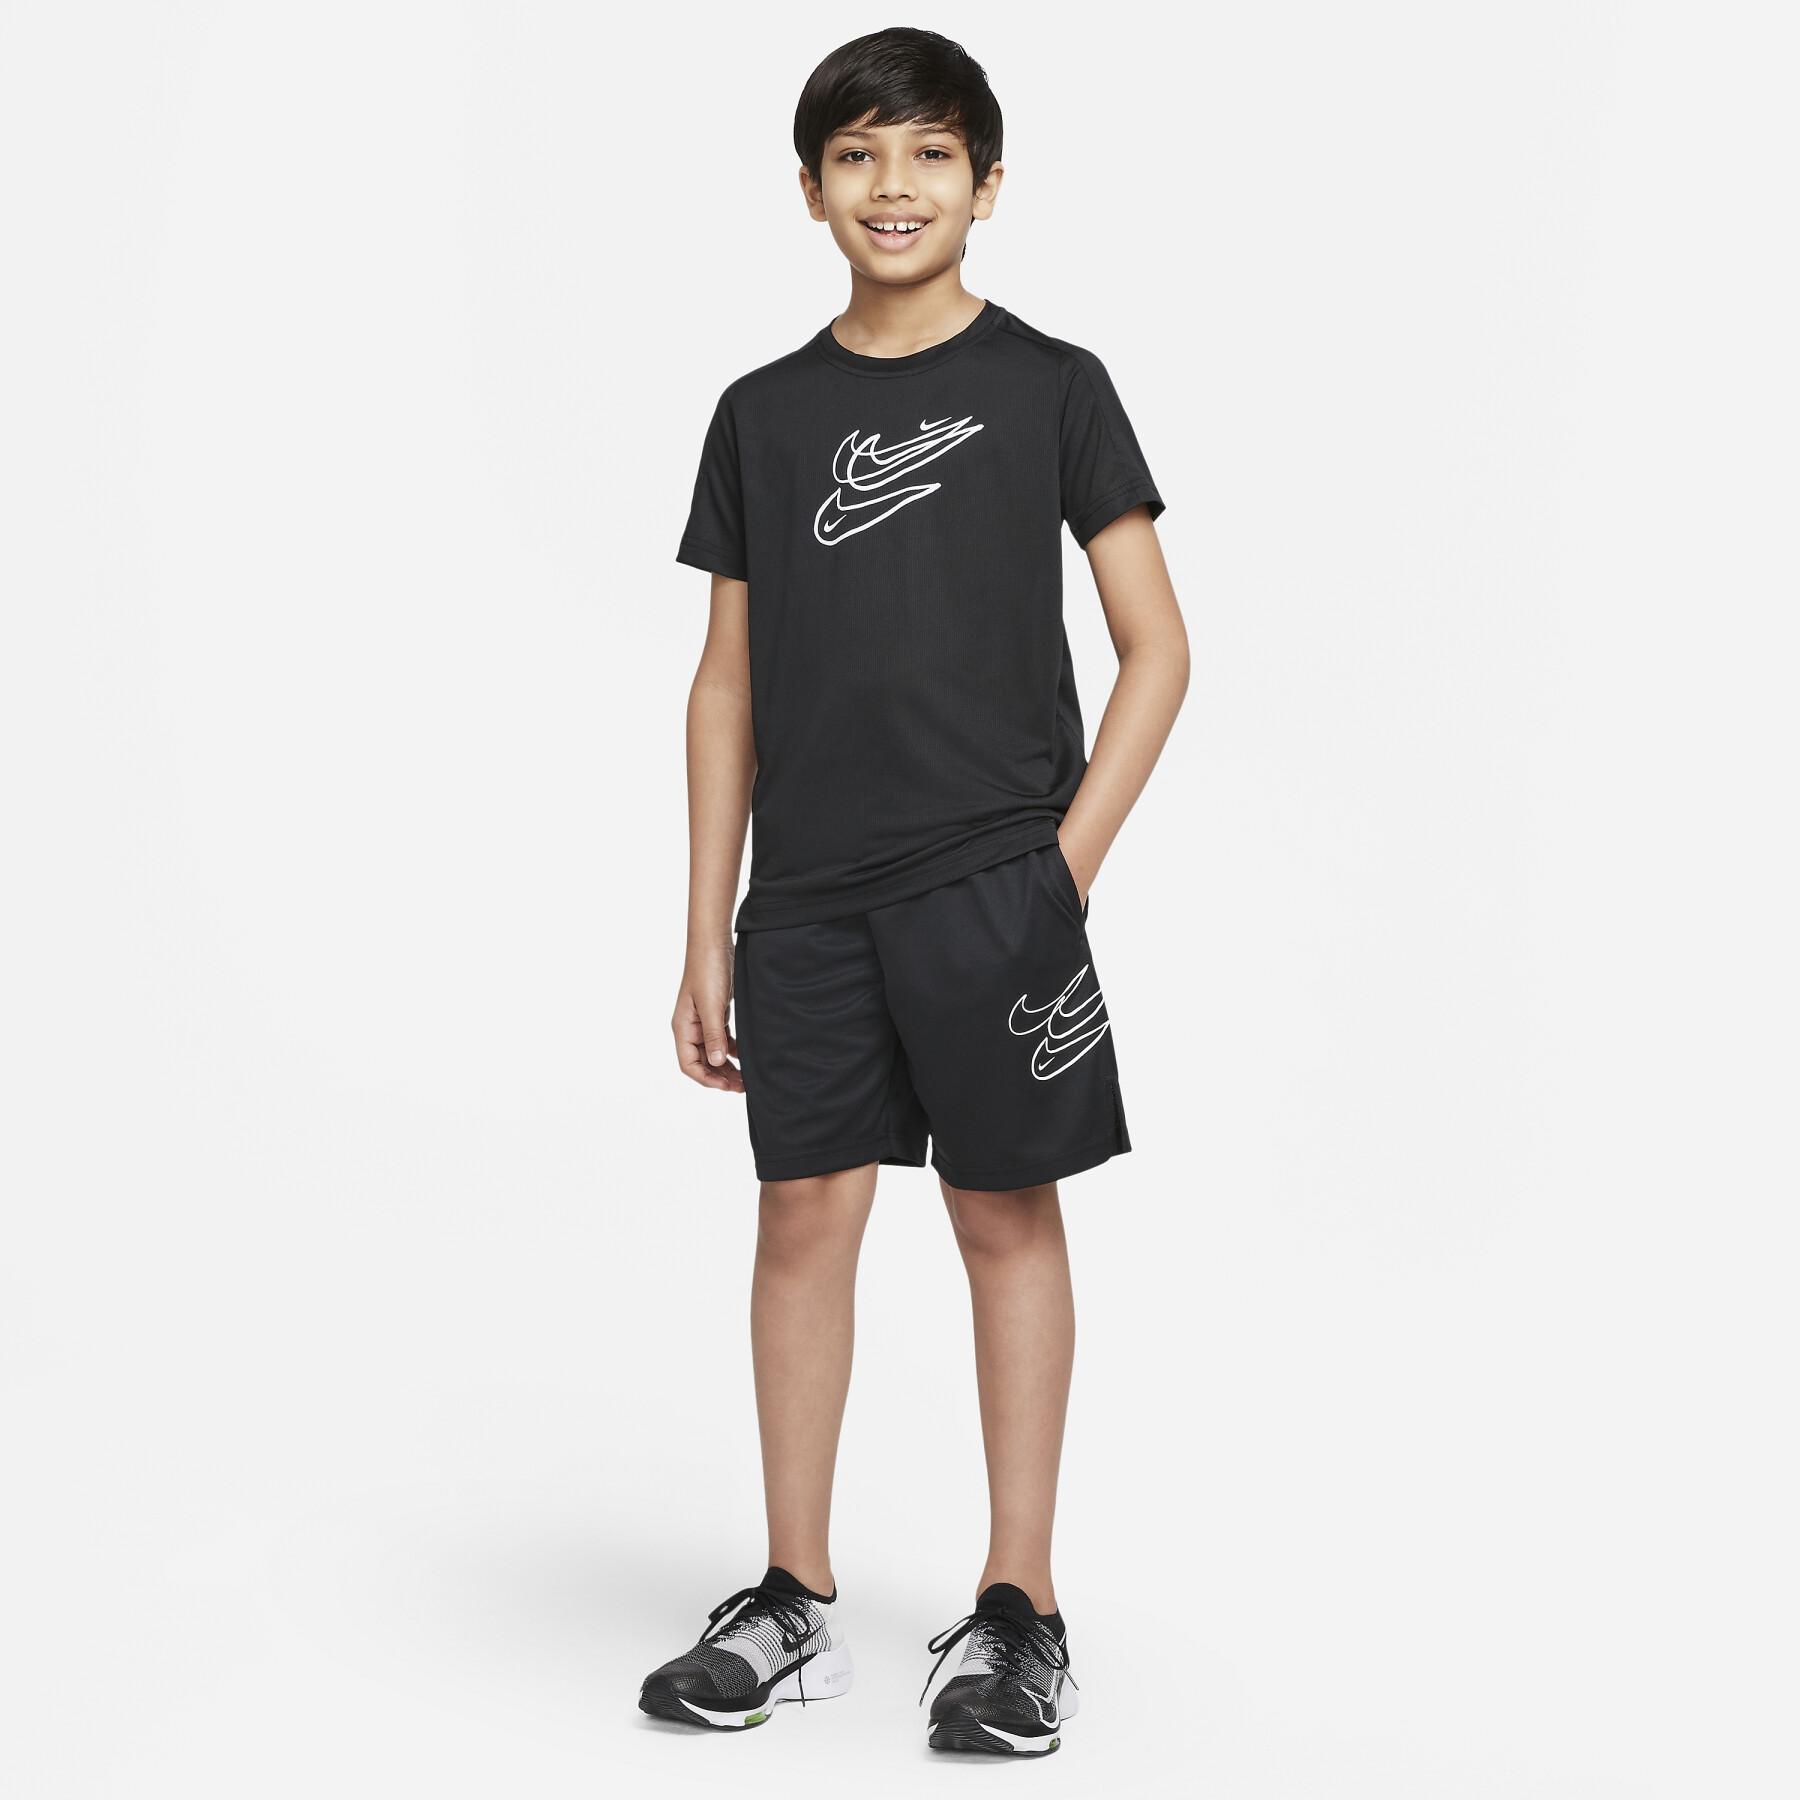 Calções para crianças Nike Collection